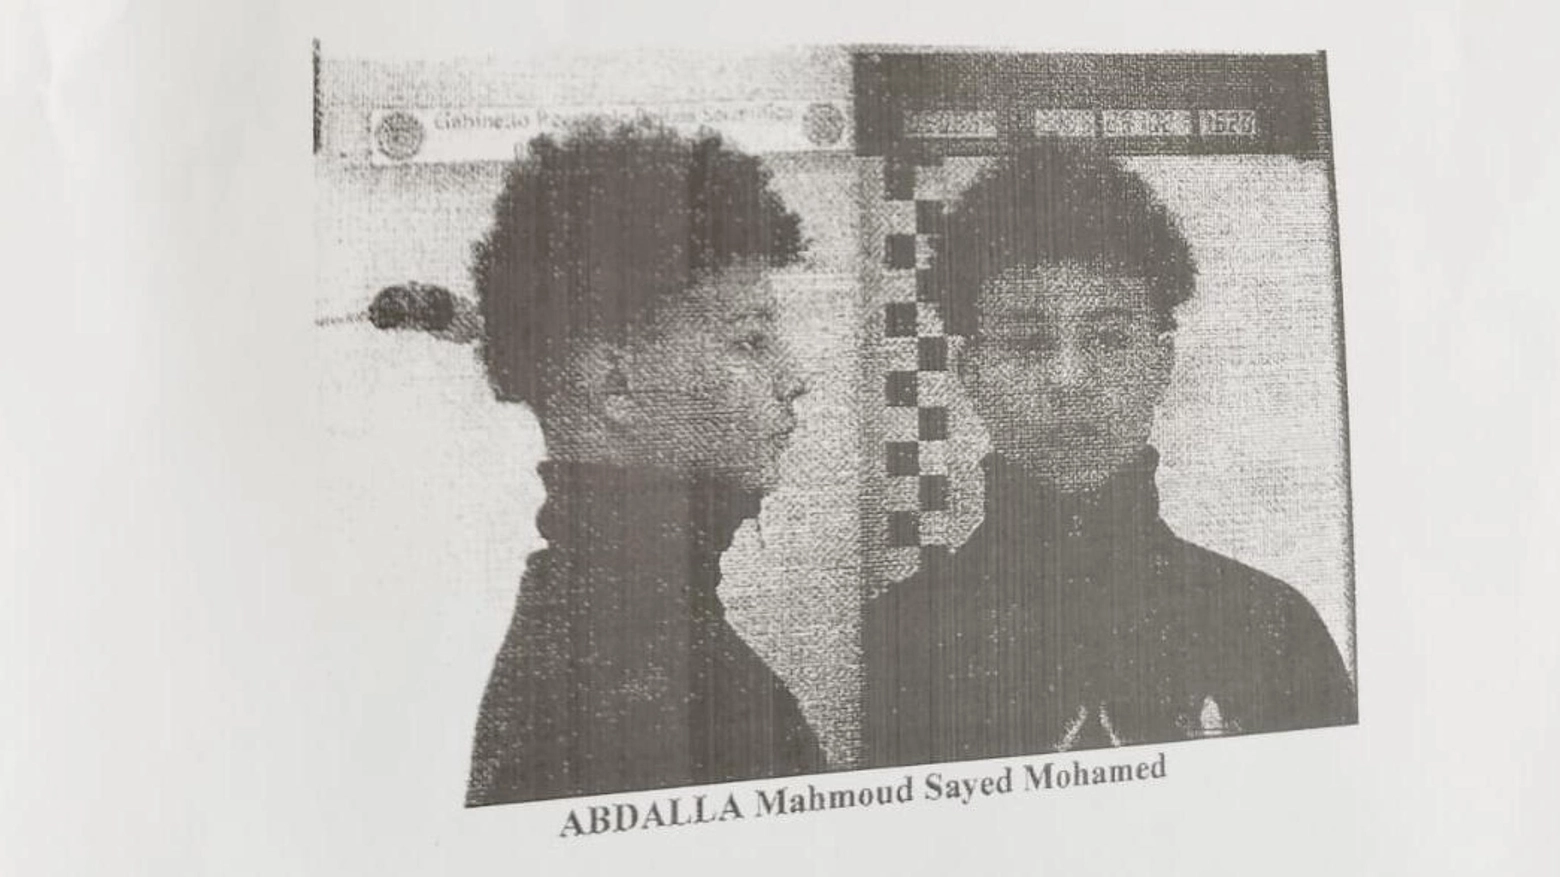 Le foto di Mahmoud Abdalla Sayed Mohamad che era arrivato, monorenne, in Italia su un barcone